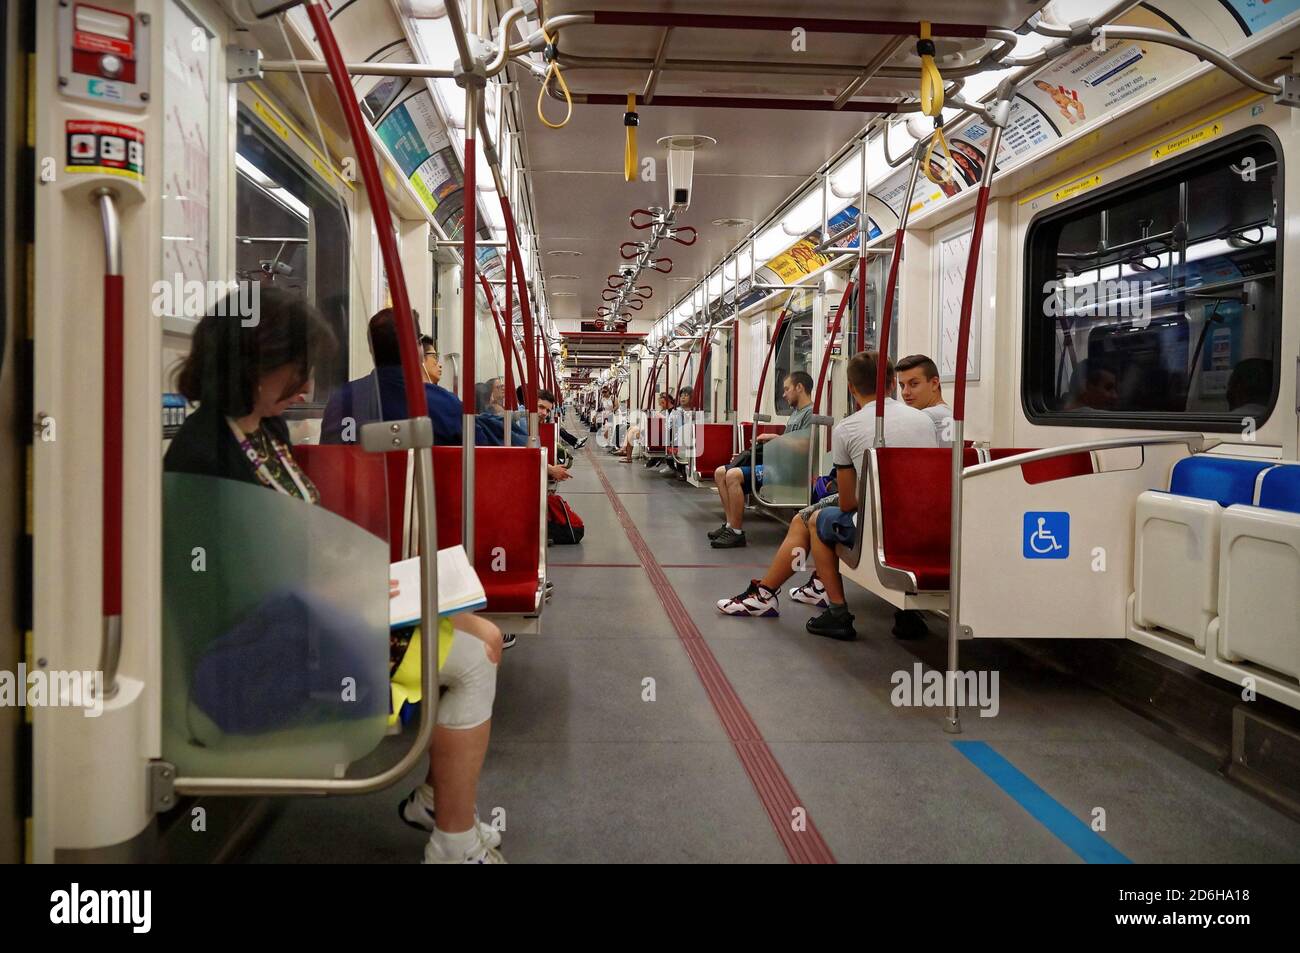 TORONTO, CANADA - 2016 06 27 : passagers dans la cabine de la voiture de métro TTC. Toronto Transit Commission est une agence de transport public qui exploite le transport en commun Banque D'Images